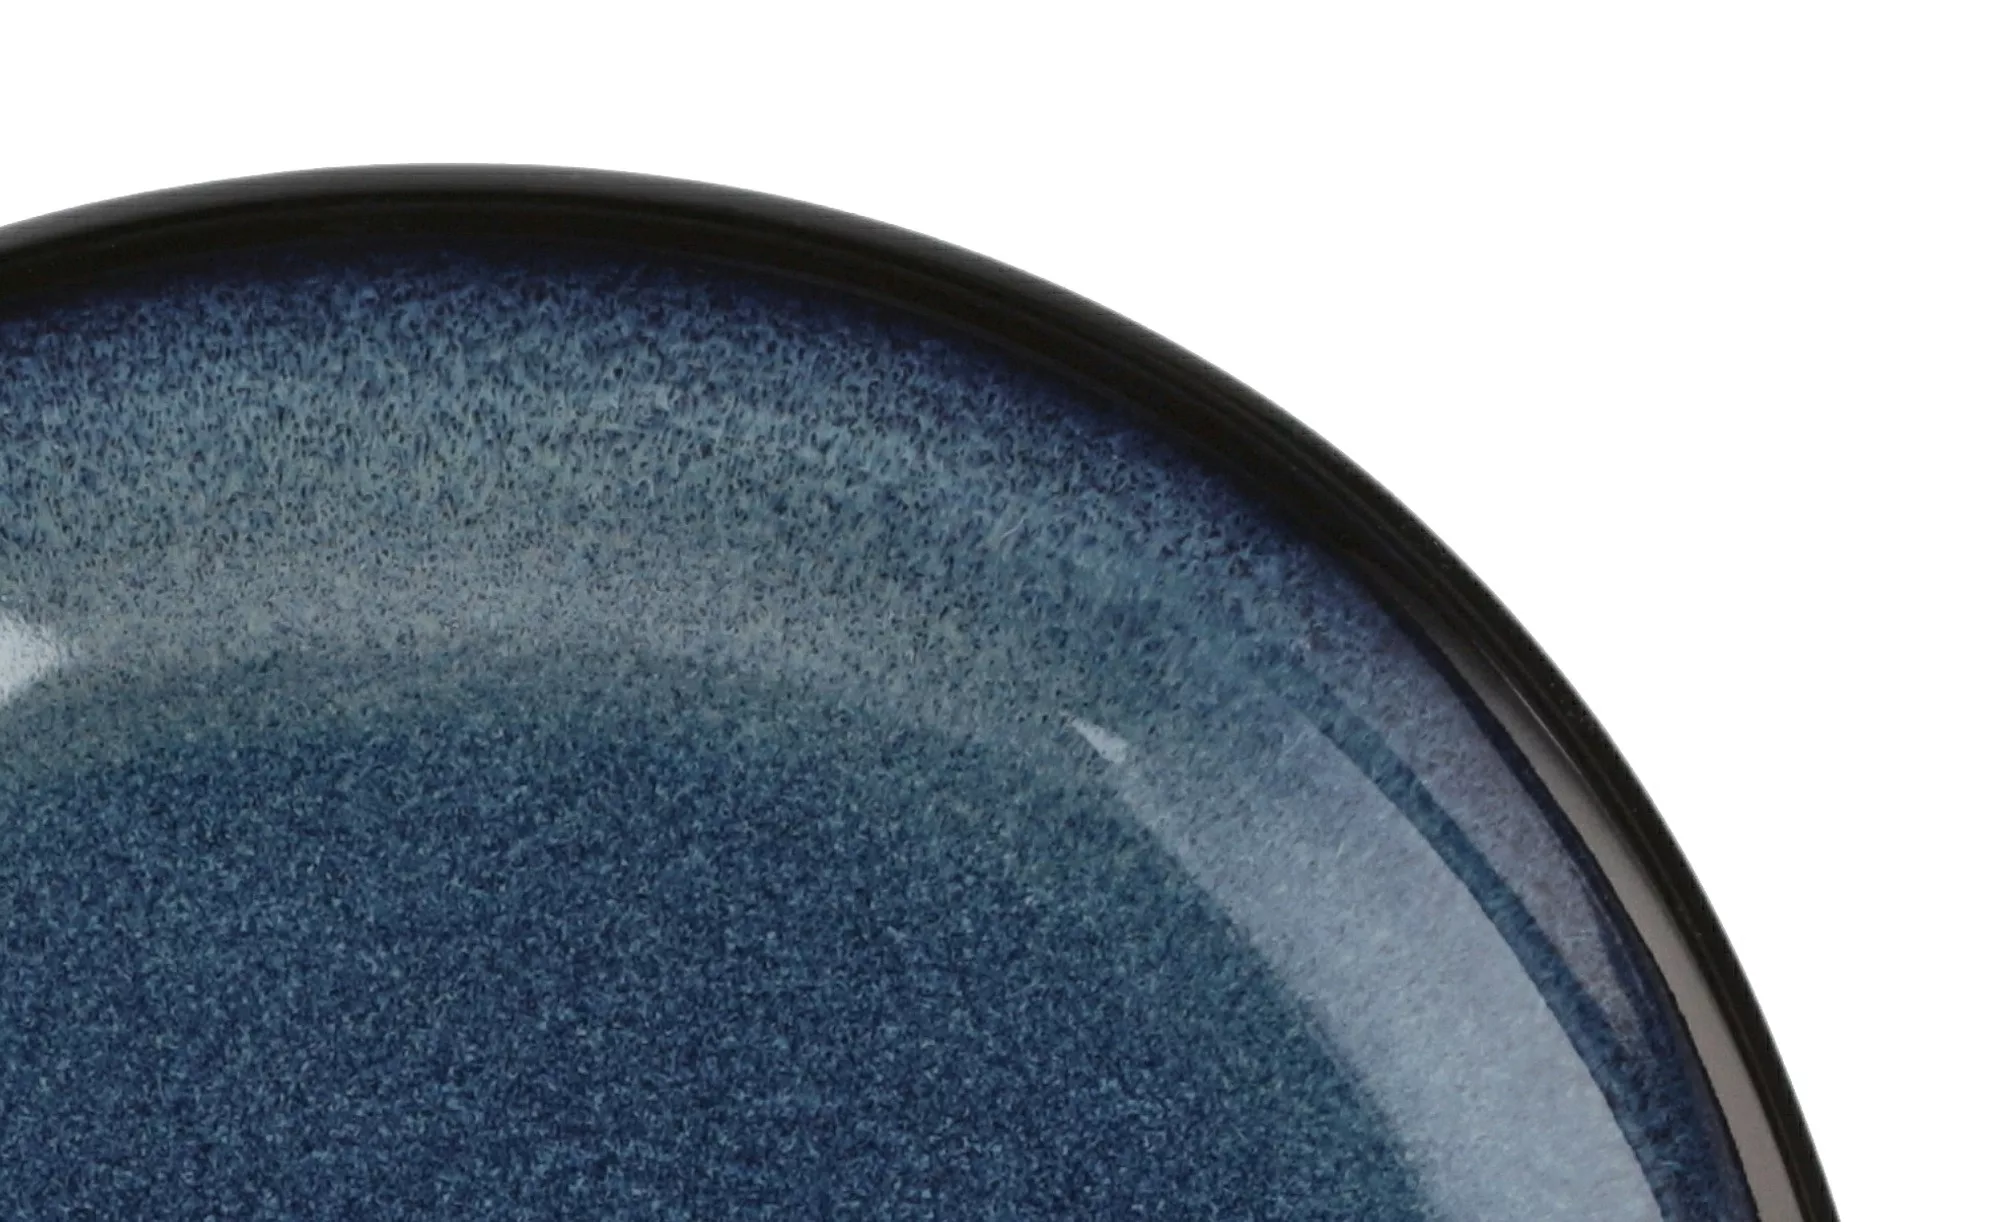 Peill+Putzler Platte oval  Azuro - blau - Porzellan - 18 cm - 3,2 cm - Scon günstig online kaufen